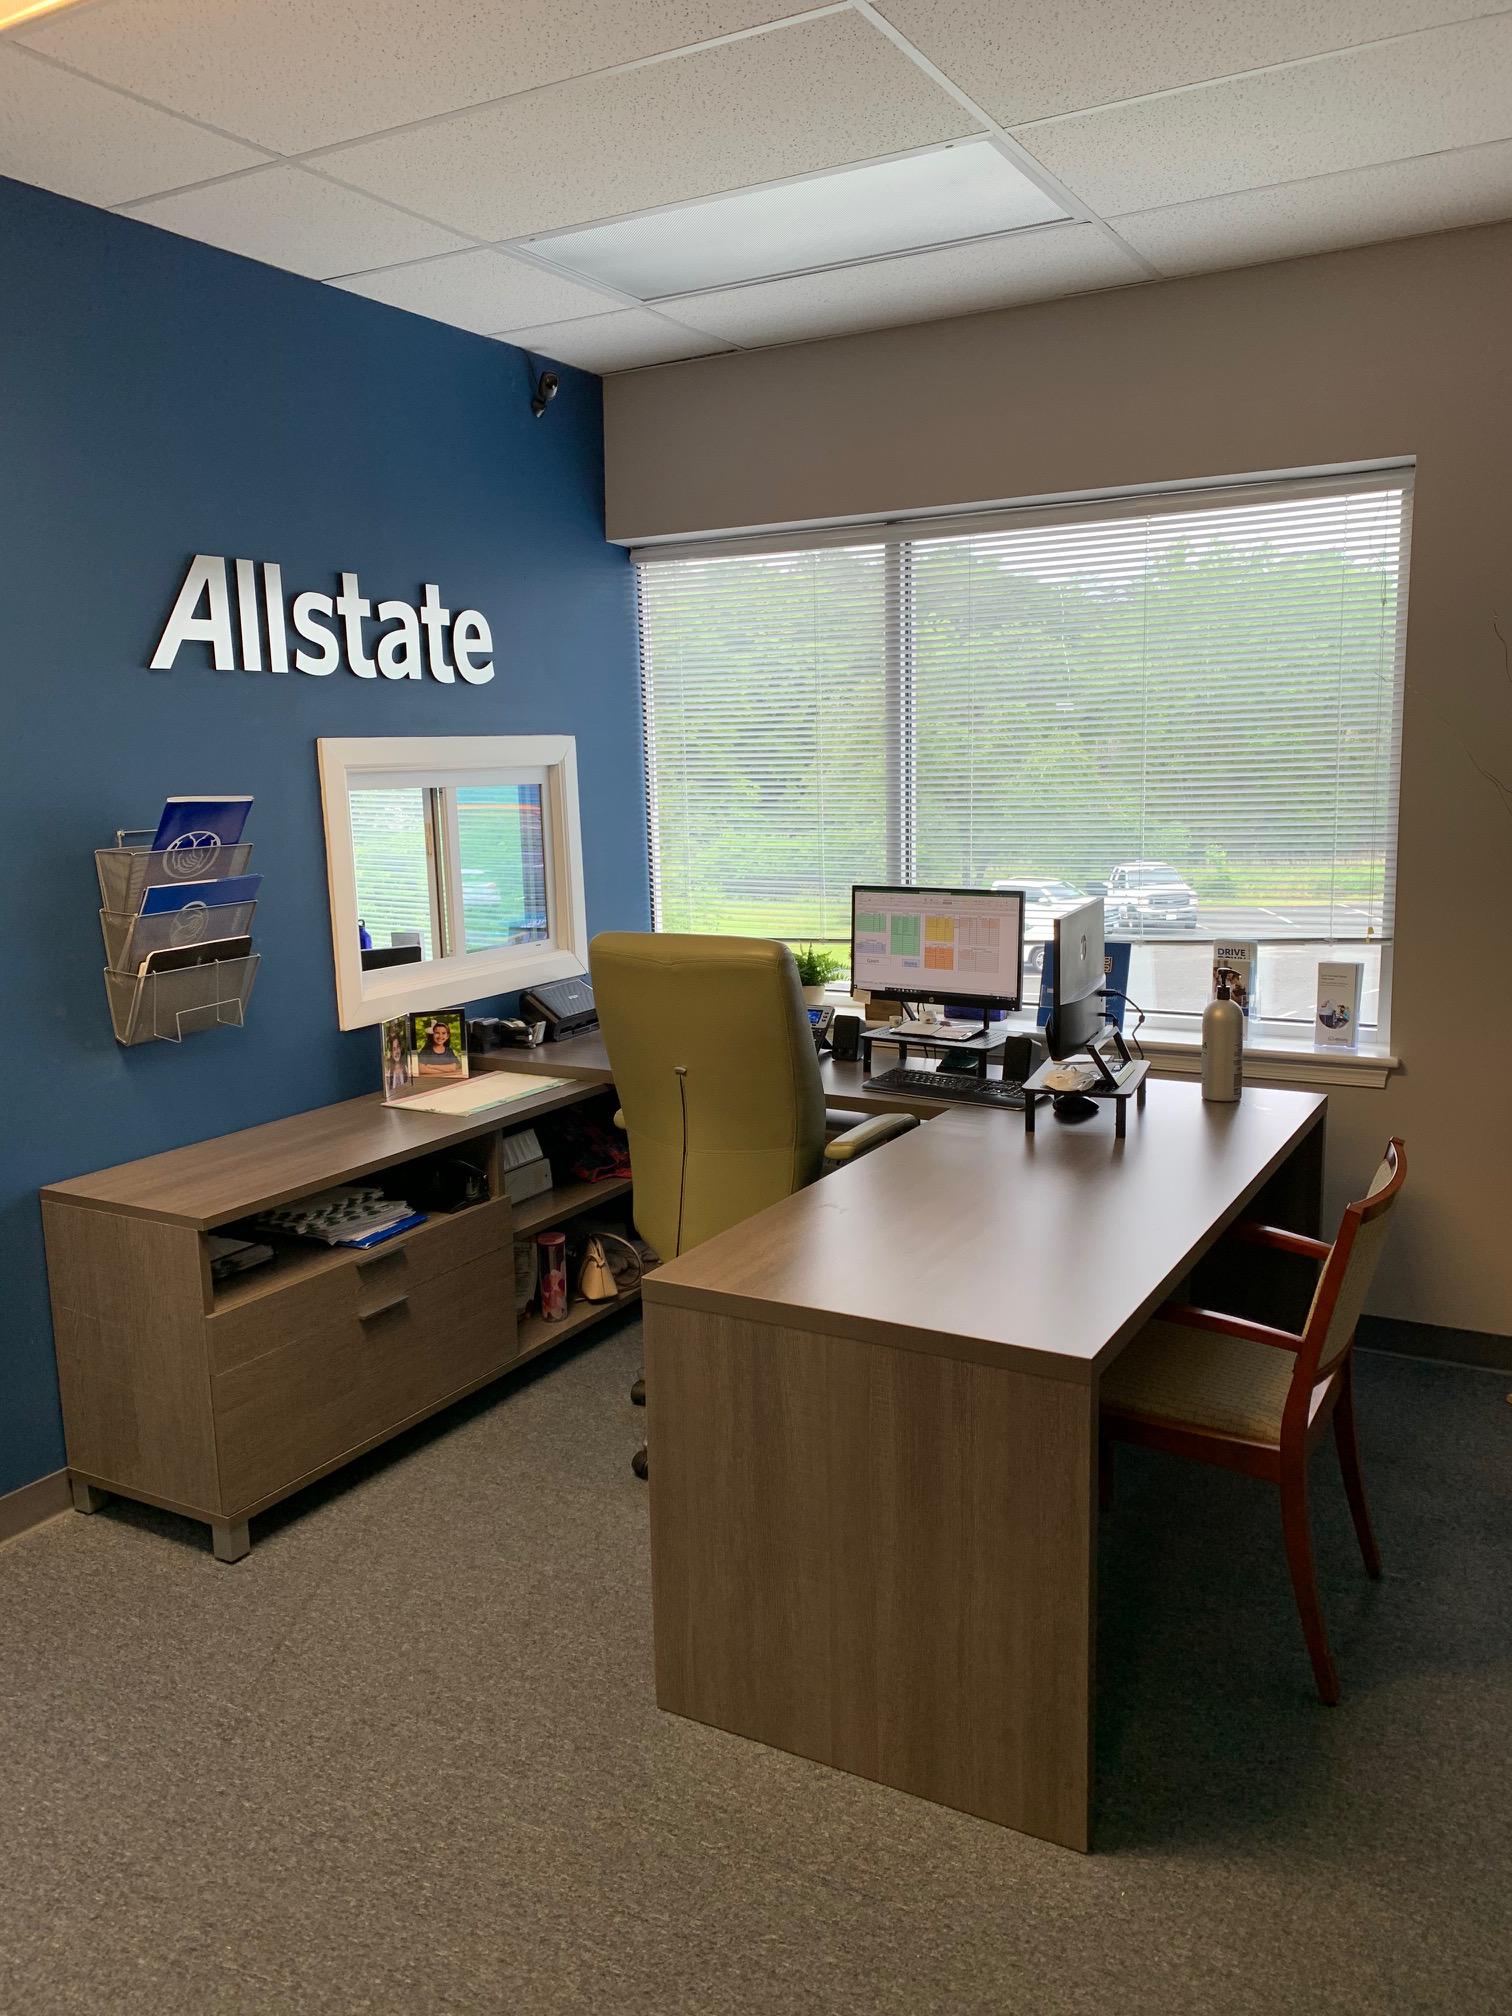 Image 5 | Joseph Giguere: Allstate Insurance